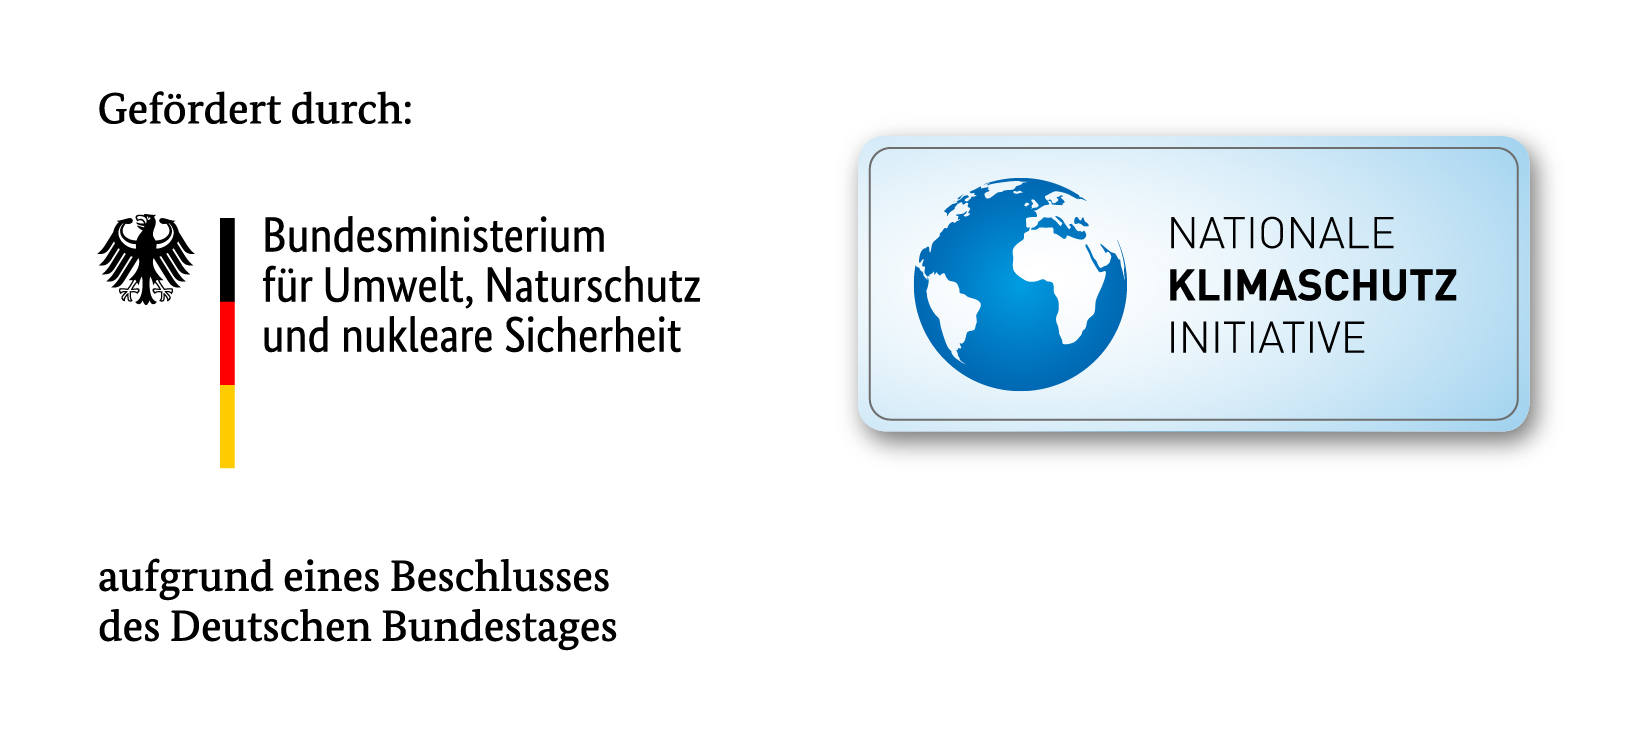 Schriftzüge Logos: Gefördert durch Bundesministerium für Umwelt, Naturschutz und nukleare Sicherheit sowie Nationale Klimaschutz Initiateve aufgrund eines Beschlusses des Deutschen Bundestags